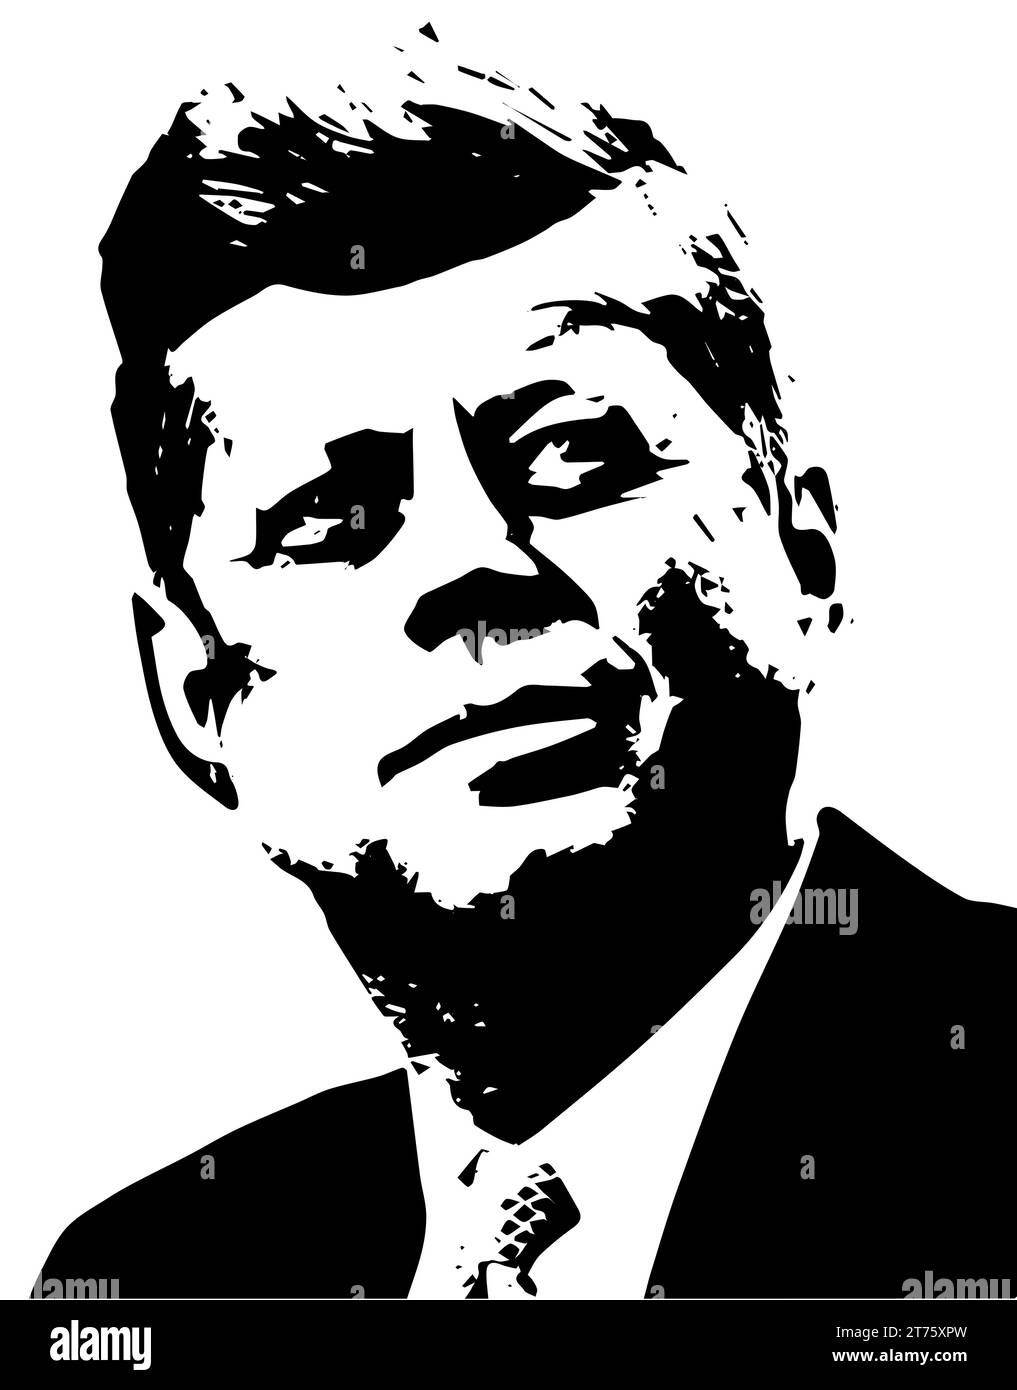 John Kennedy vecteur noir blanc JFK Portrait photo des États-Unis, 35e président des États-Unis. Né en 1917, charisme et leadership. Tué en 1963 Illustration de Vecteur